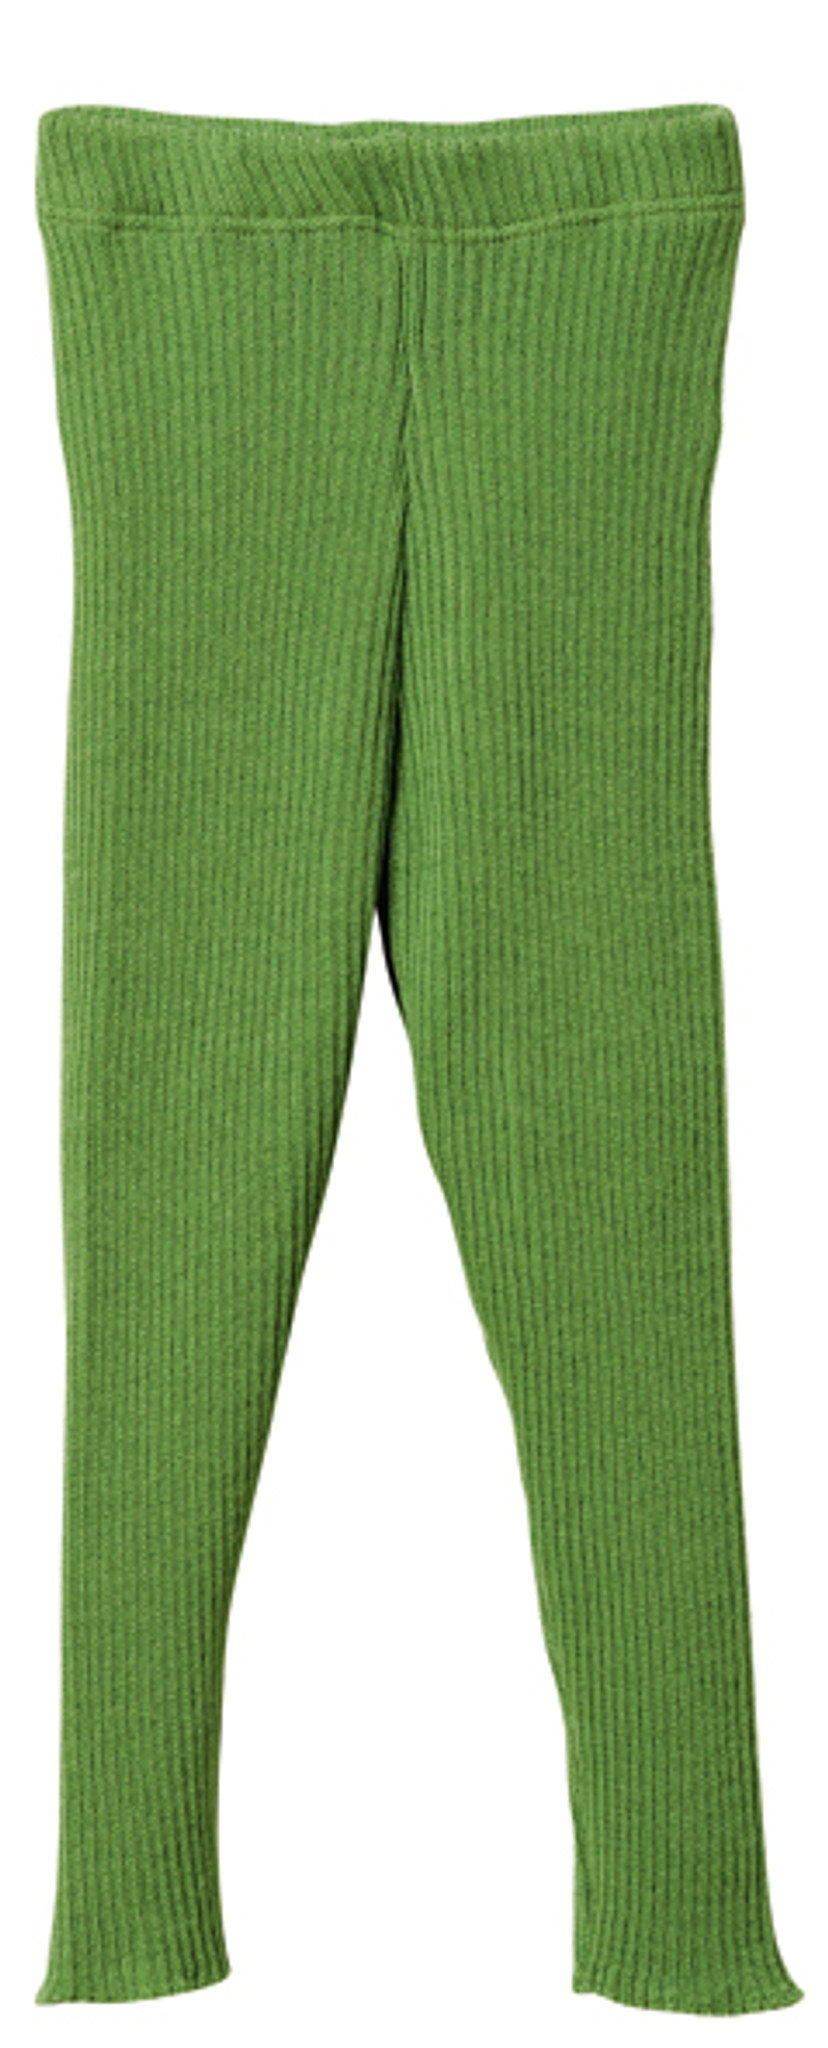 Disana Organic Merino Wool Knitted Leggings